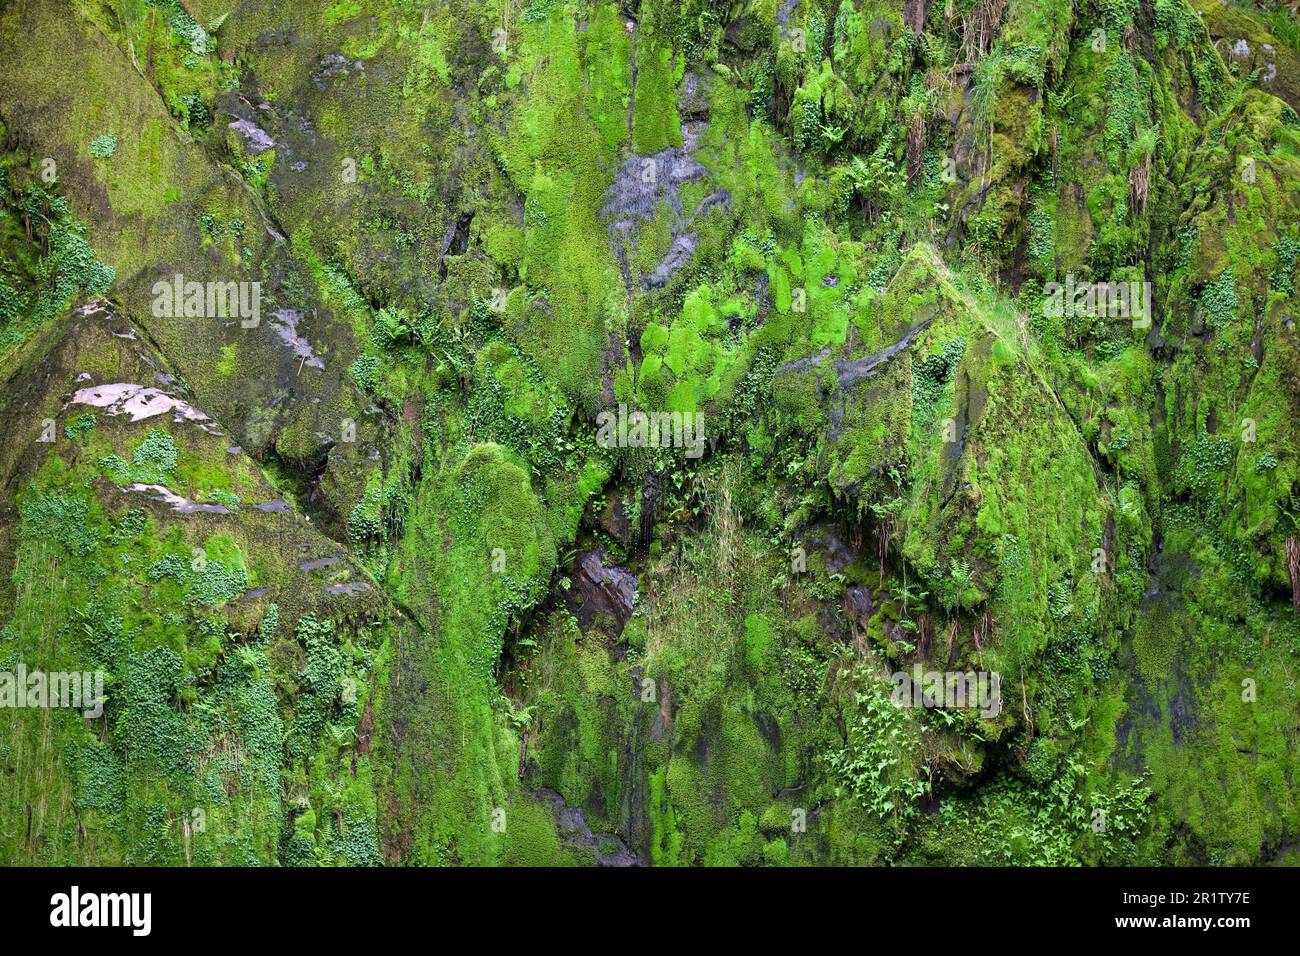 La cascade de Ceunant Mawr se trouve dans le village de Llanberis, à Snowdonia. Il est vu ici pendant une période sèche révélant le jardin de mousse derrière les chutes. Banque D'Images